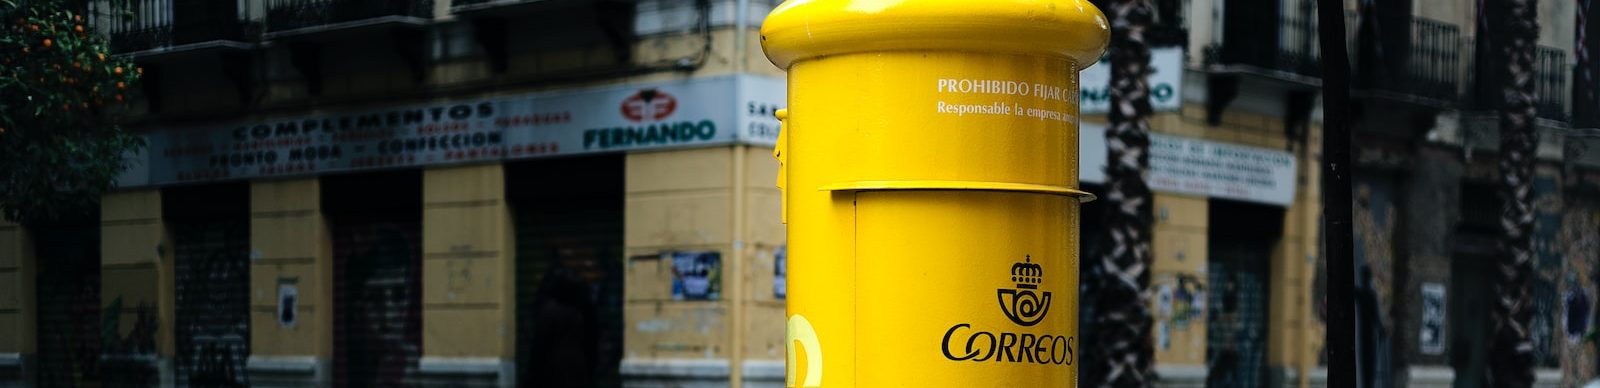 Caja de la empresa española de distribución de paquetería Correos en una vía pública